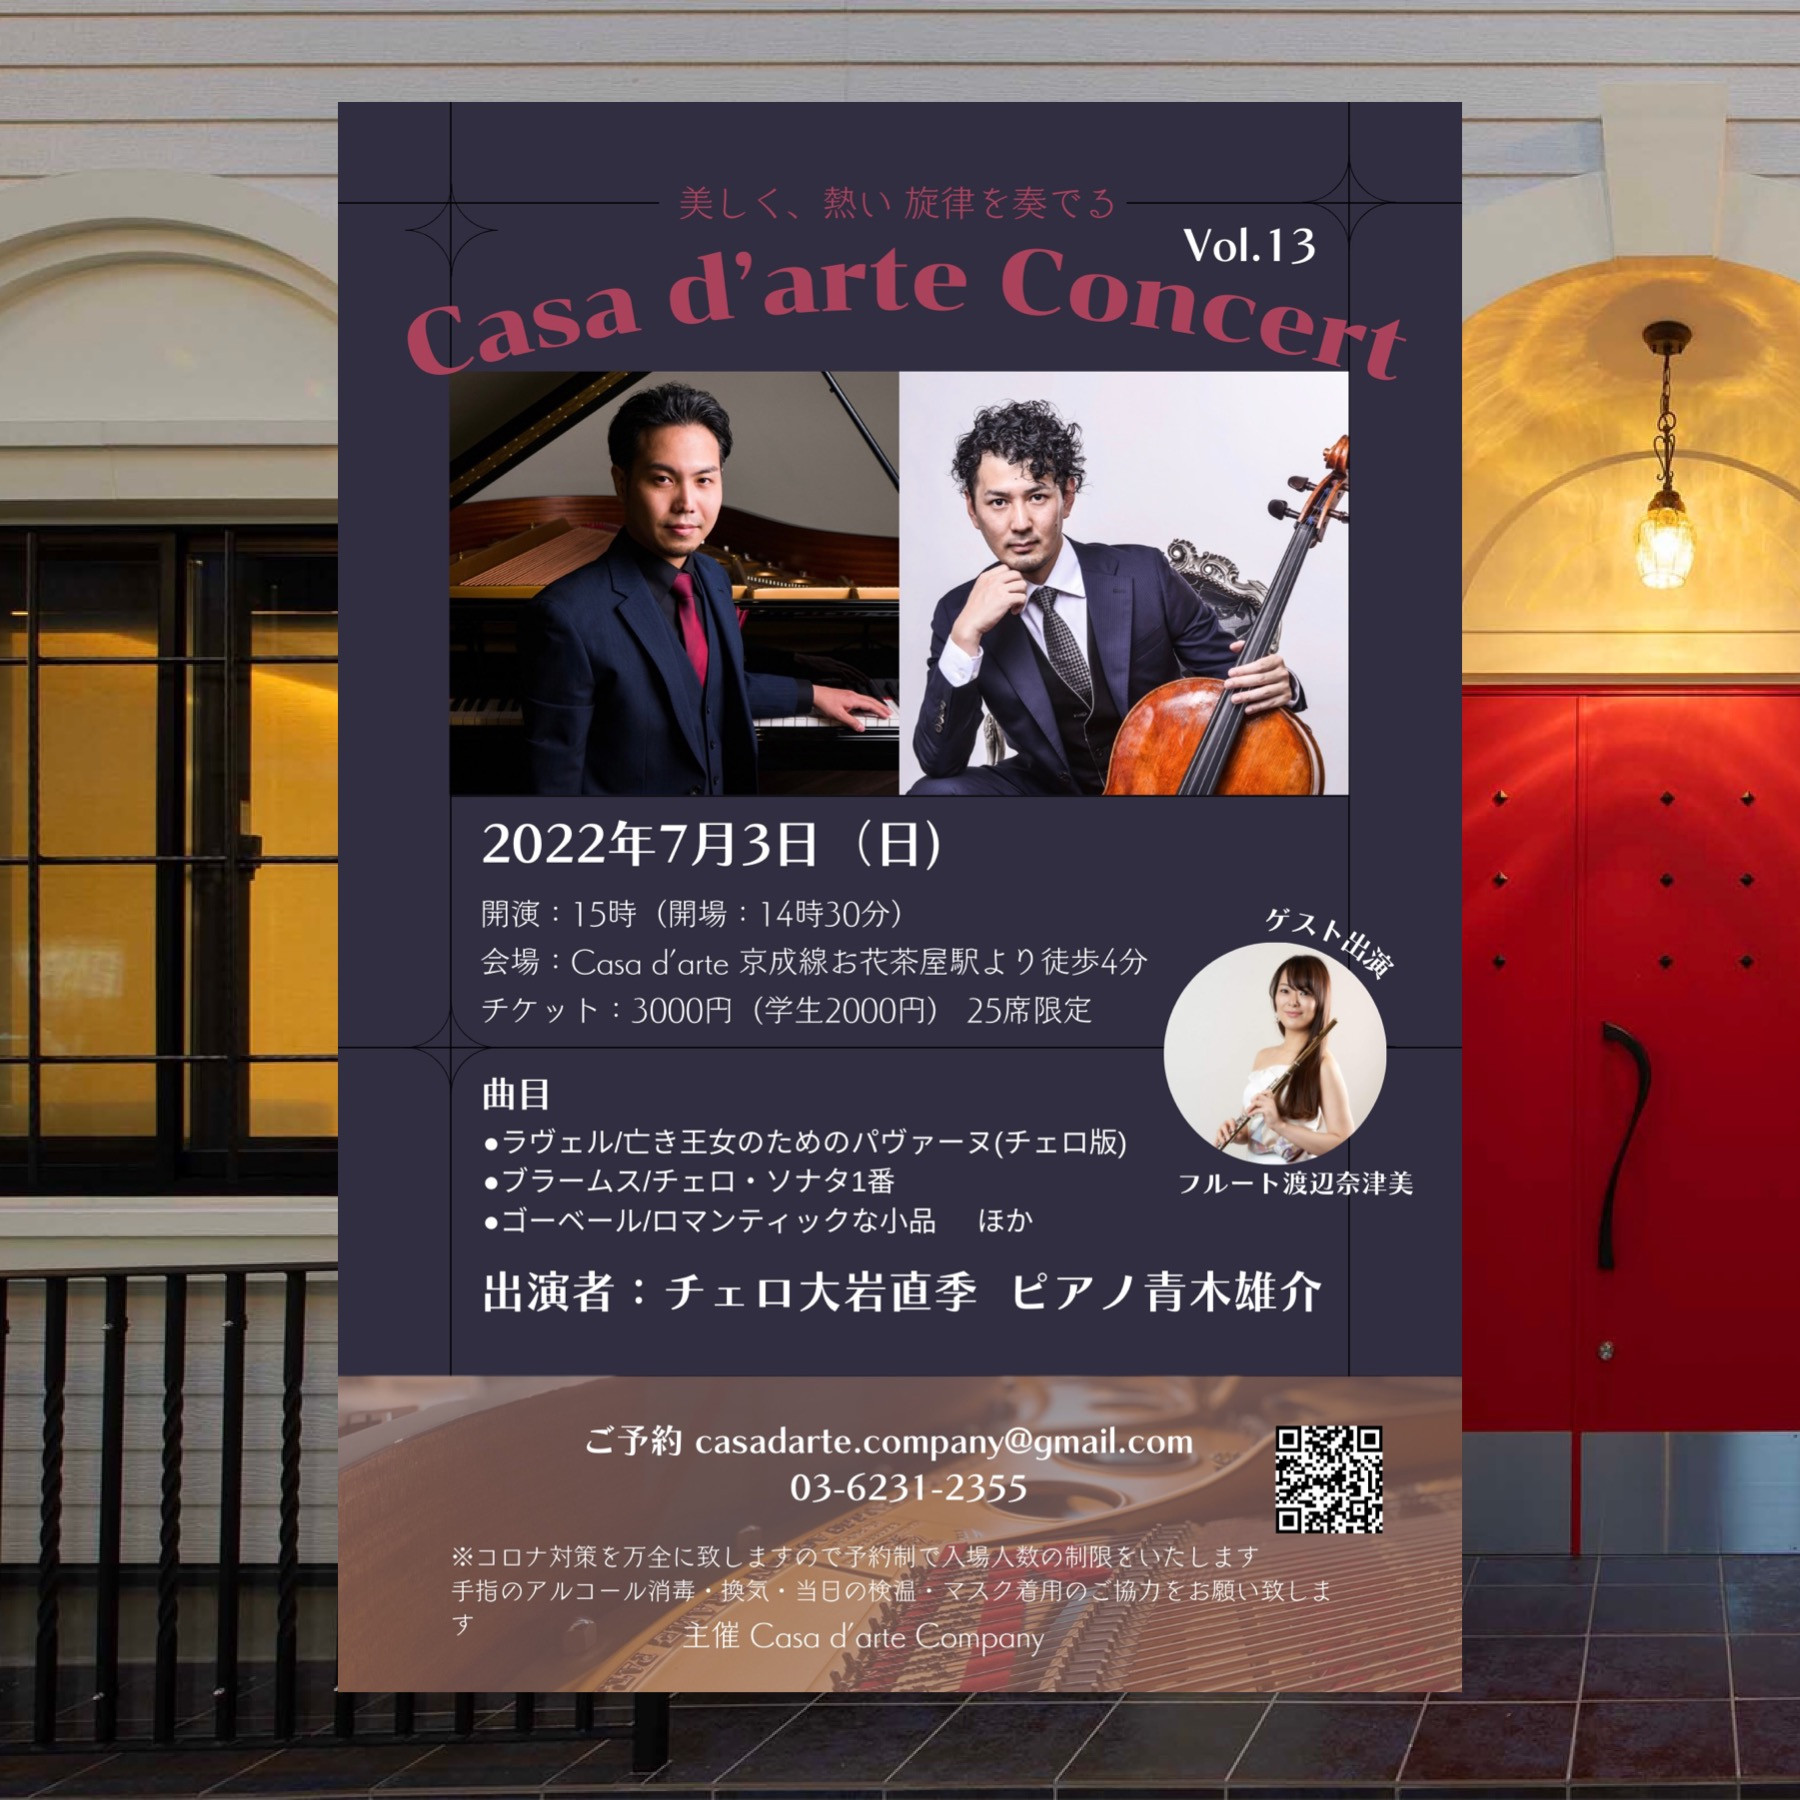 Casa d’arte Concert Vol.13  〜美しく、熱い旋律を奏でる〜